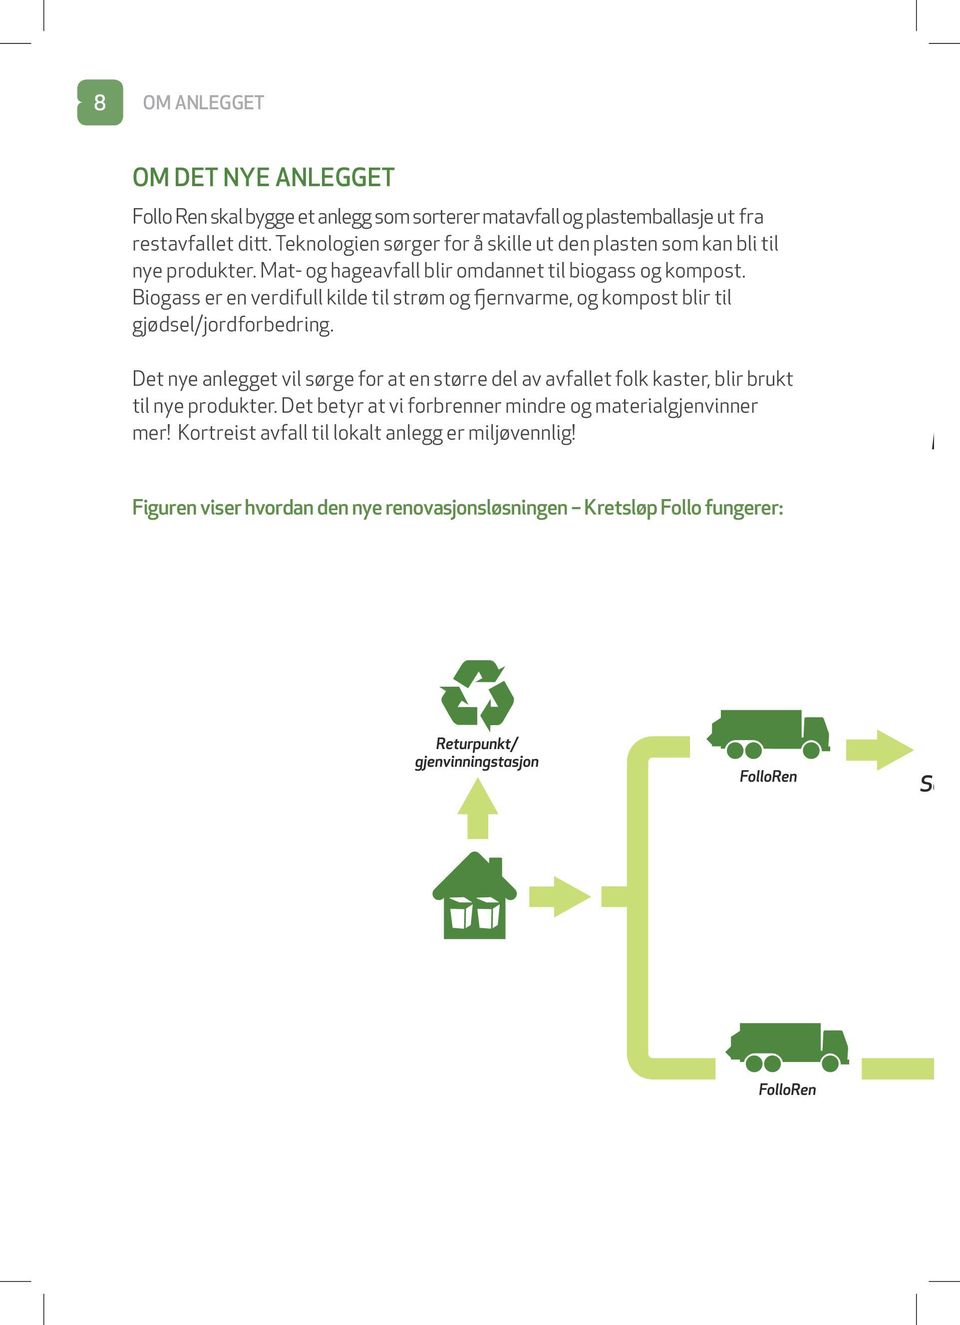 Biogass er en verdifull kilde til strøm og fjernvarme, og kompost blir til gjødsel/jordforbedring.